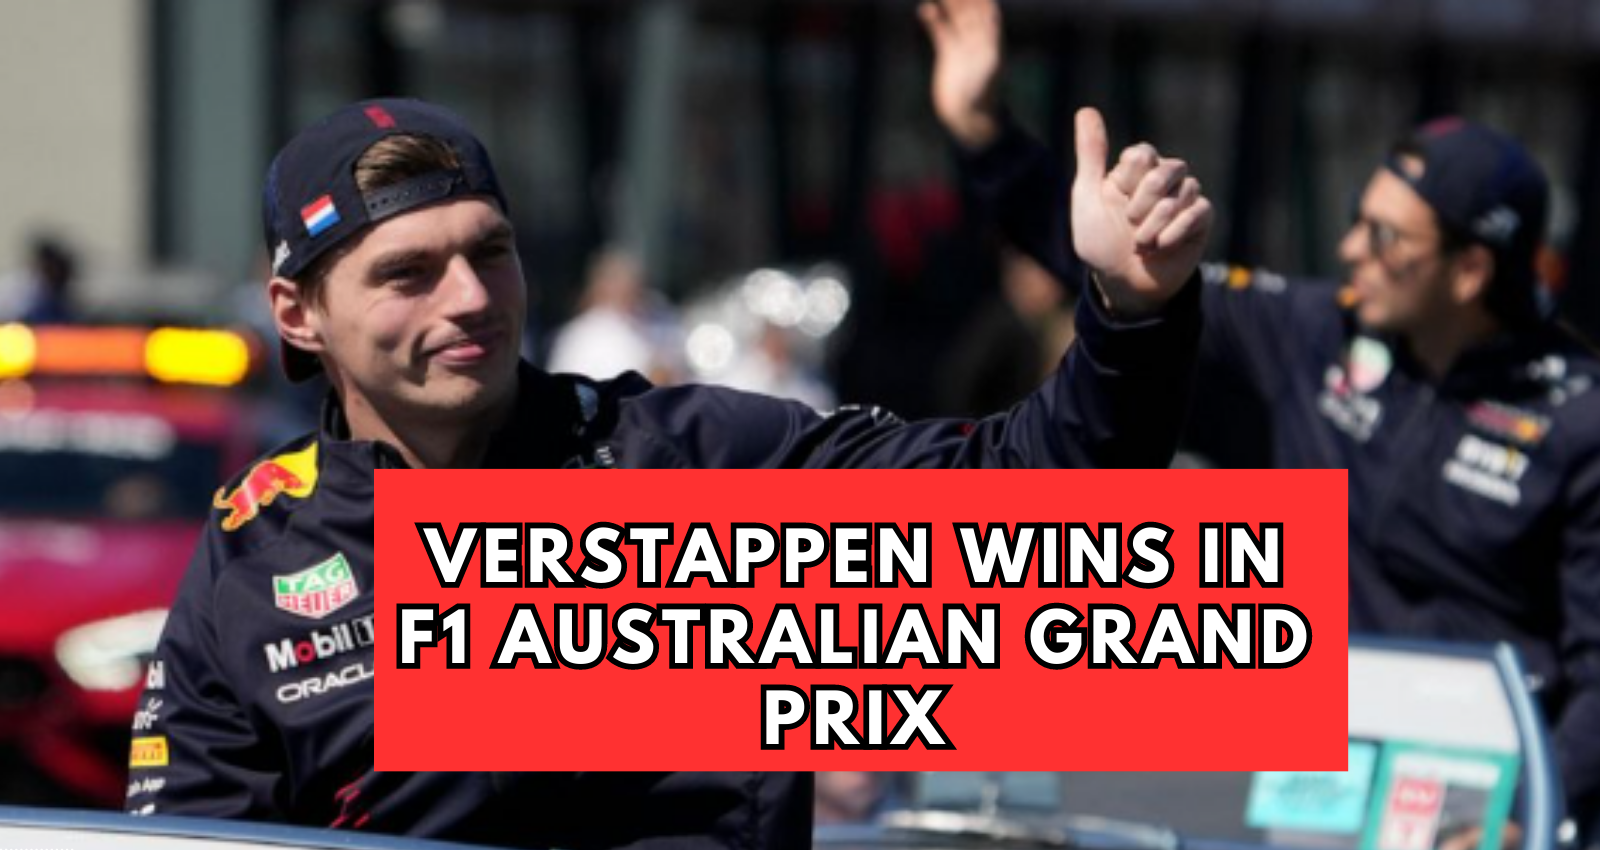 Verstappen wins in F1 Australian Grand Prix